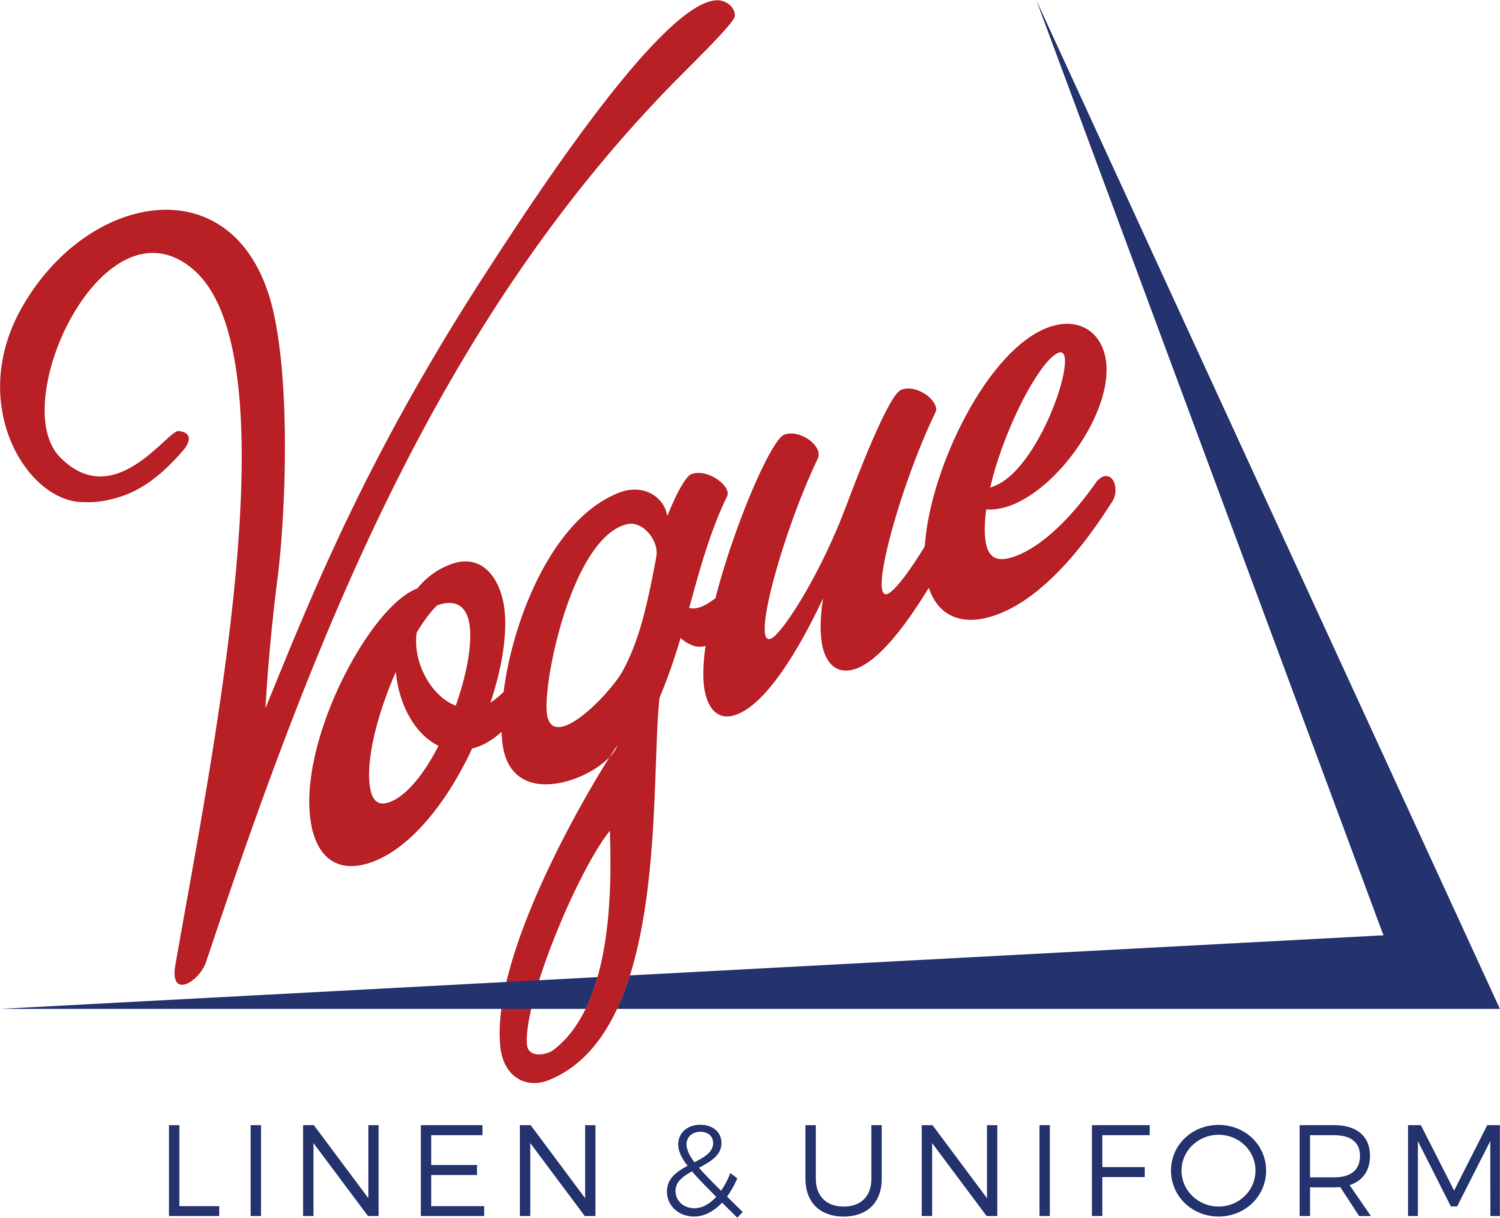 Vogue Linen & Uniform Services